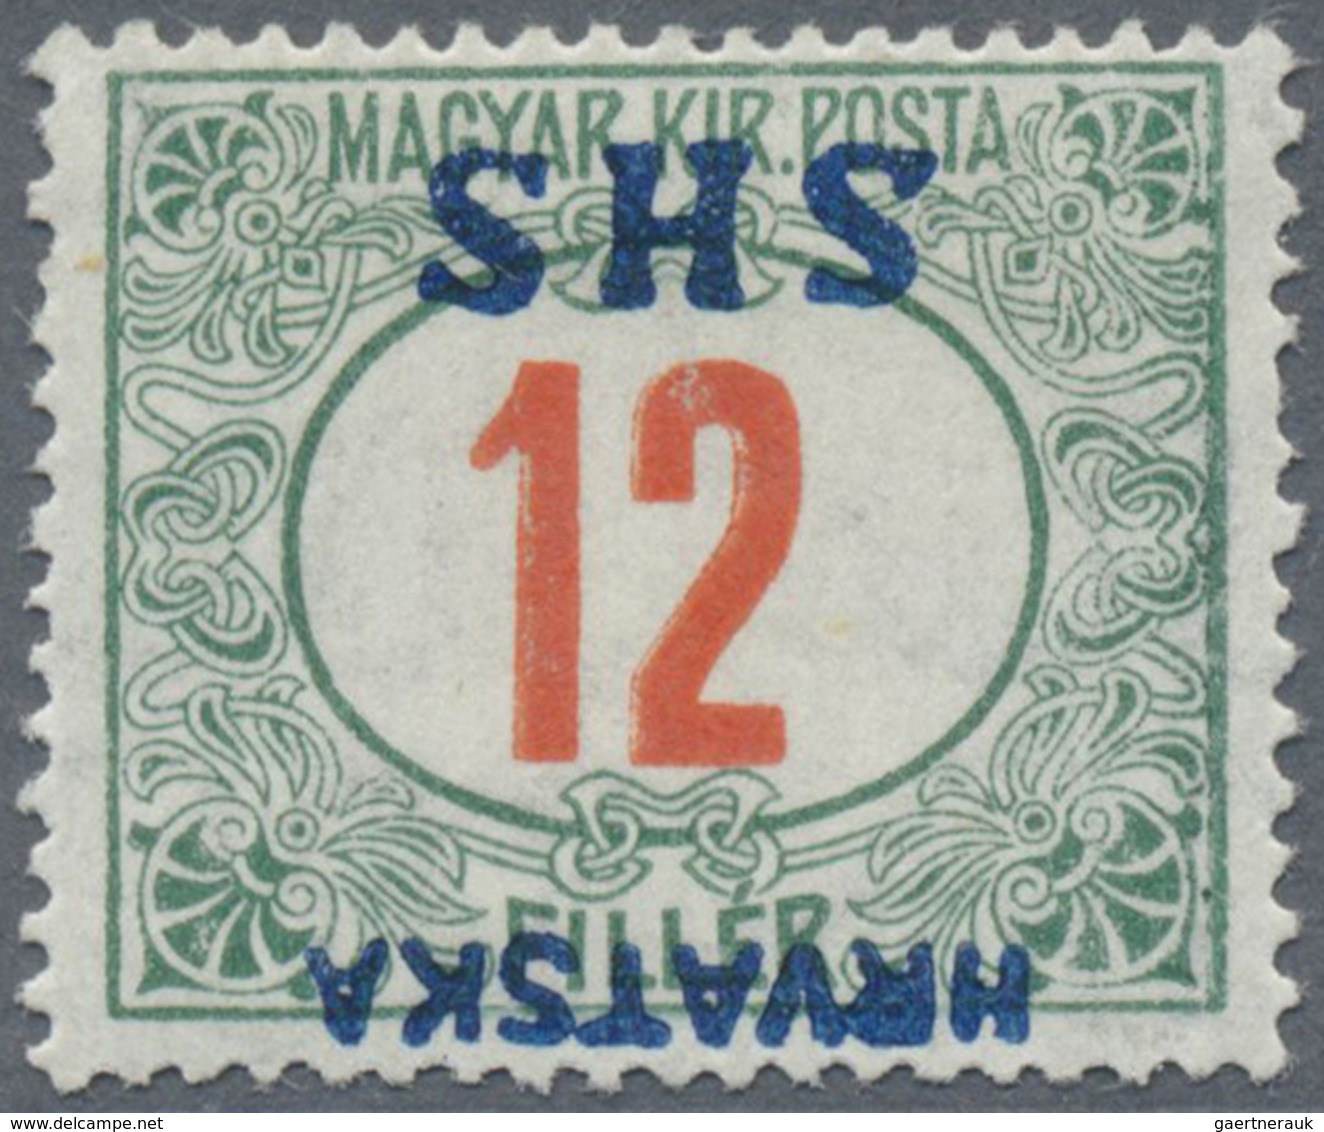 * Jugoslawien - Portomarken: 1918, Postage Due Stamp 12 F Of Hungary With INVERTED Overprint "HRVATSKA - Strafport